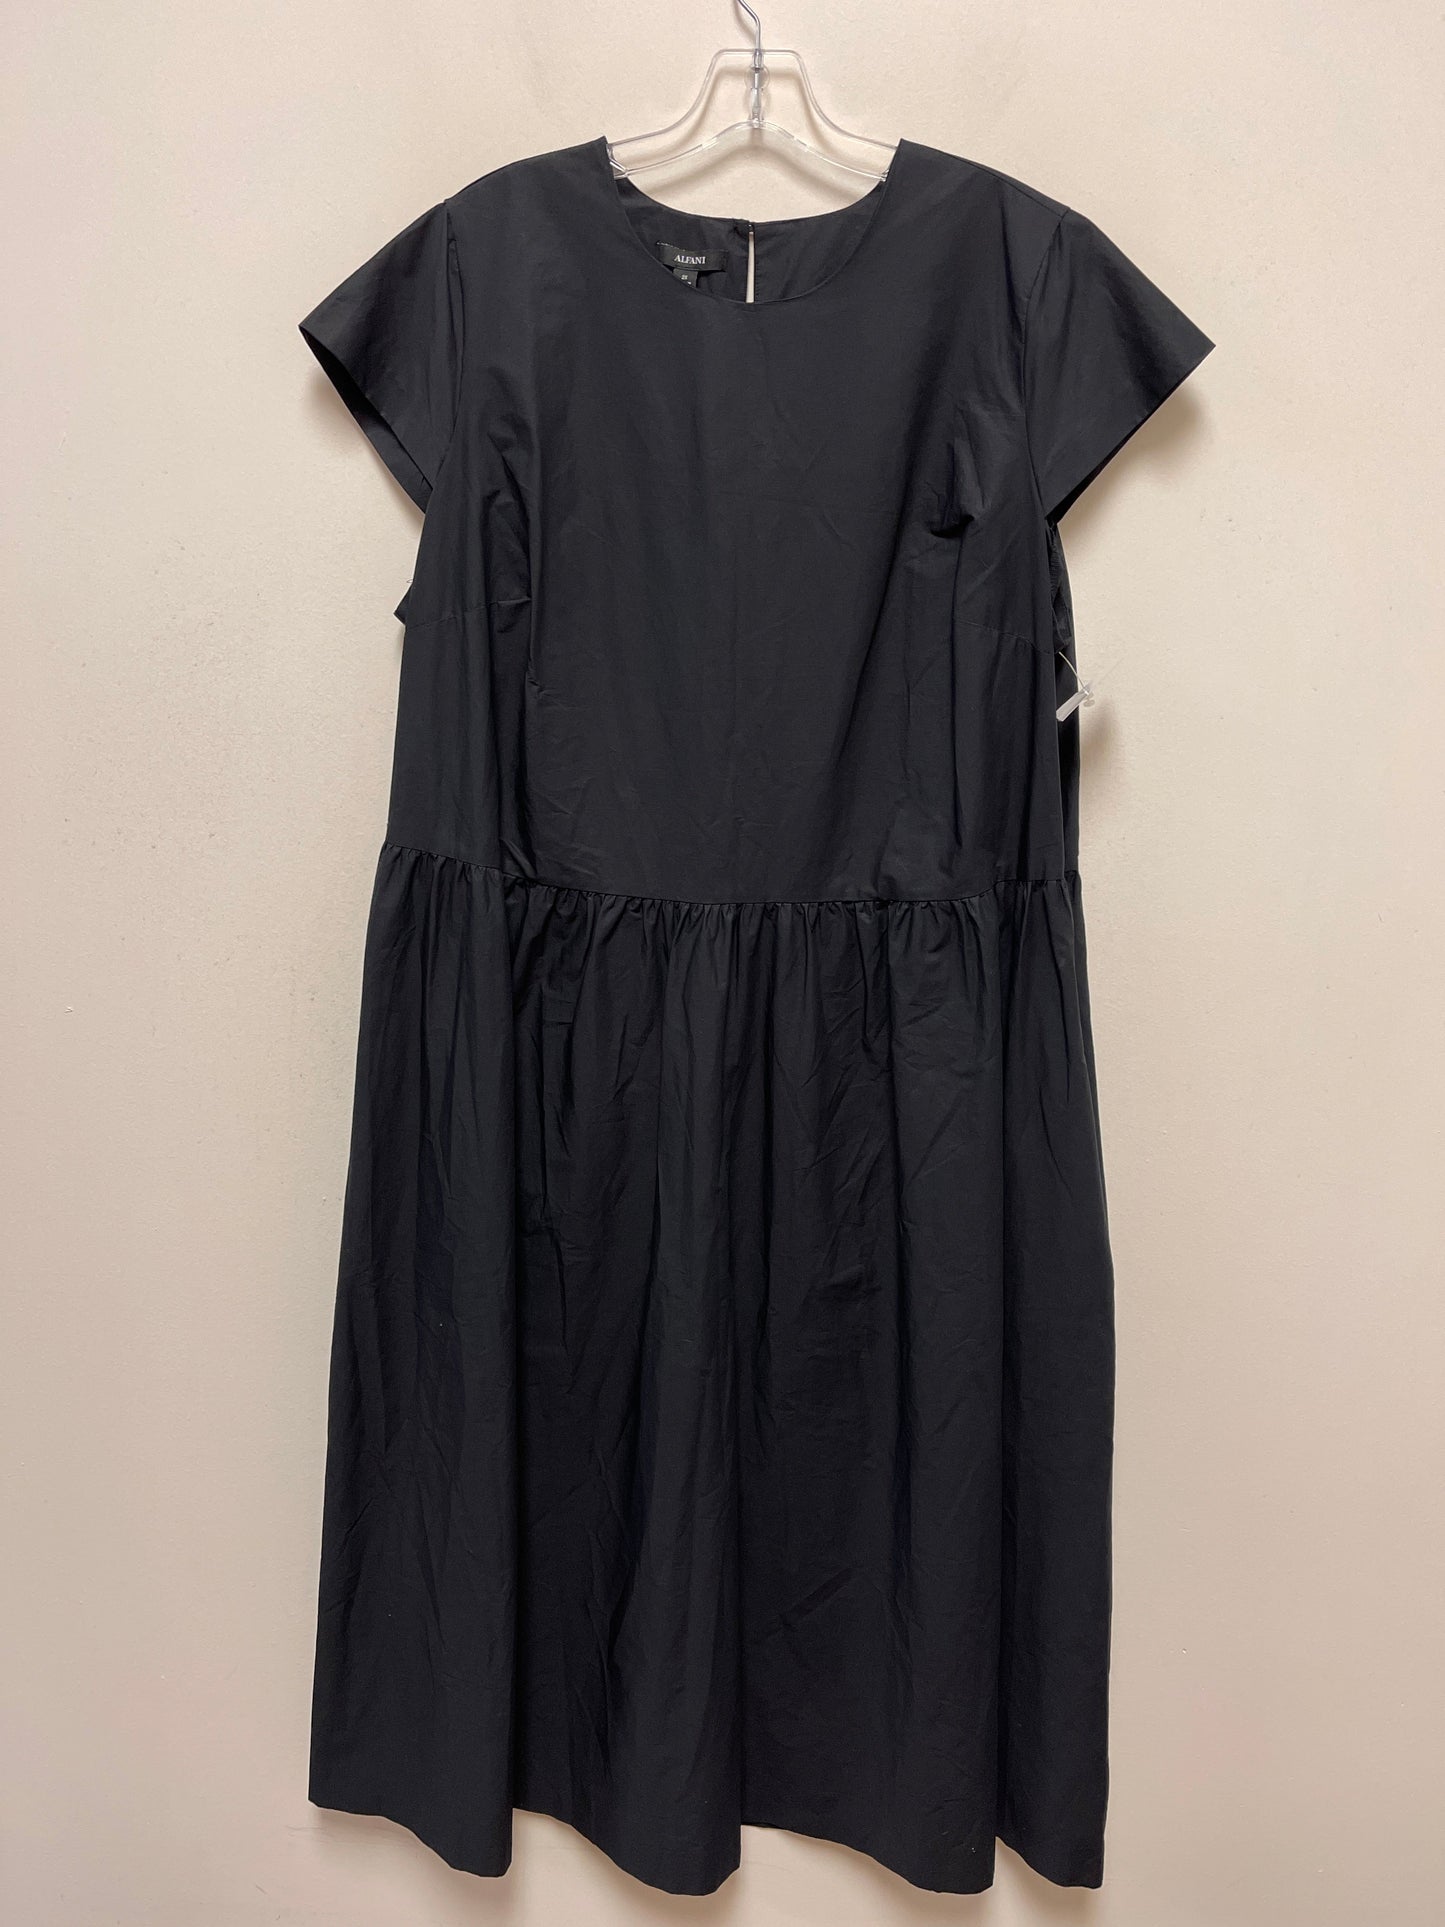 Black Dress Casual Maxi Alfani, Size 2x